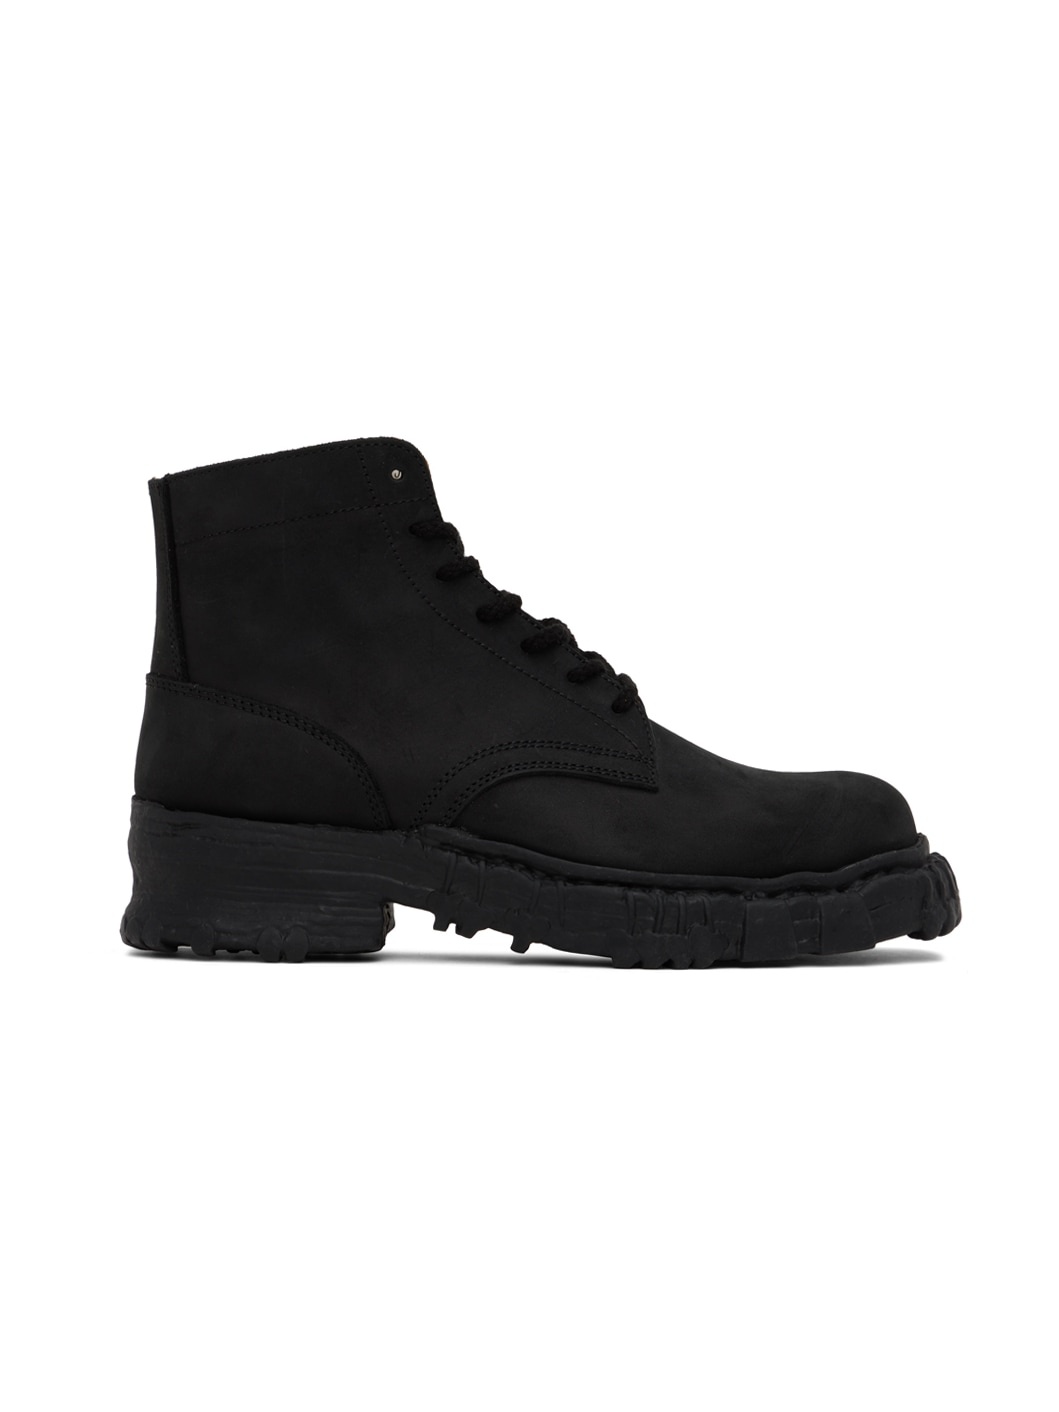 Black Vintage Like Boots - 1